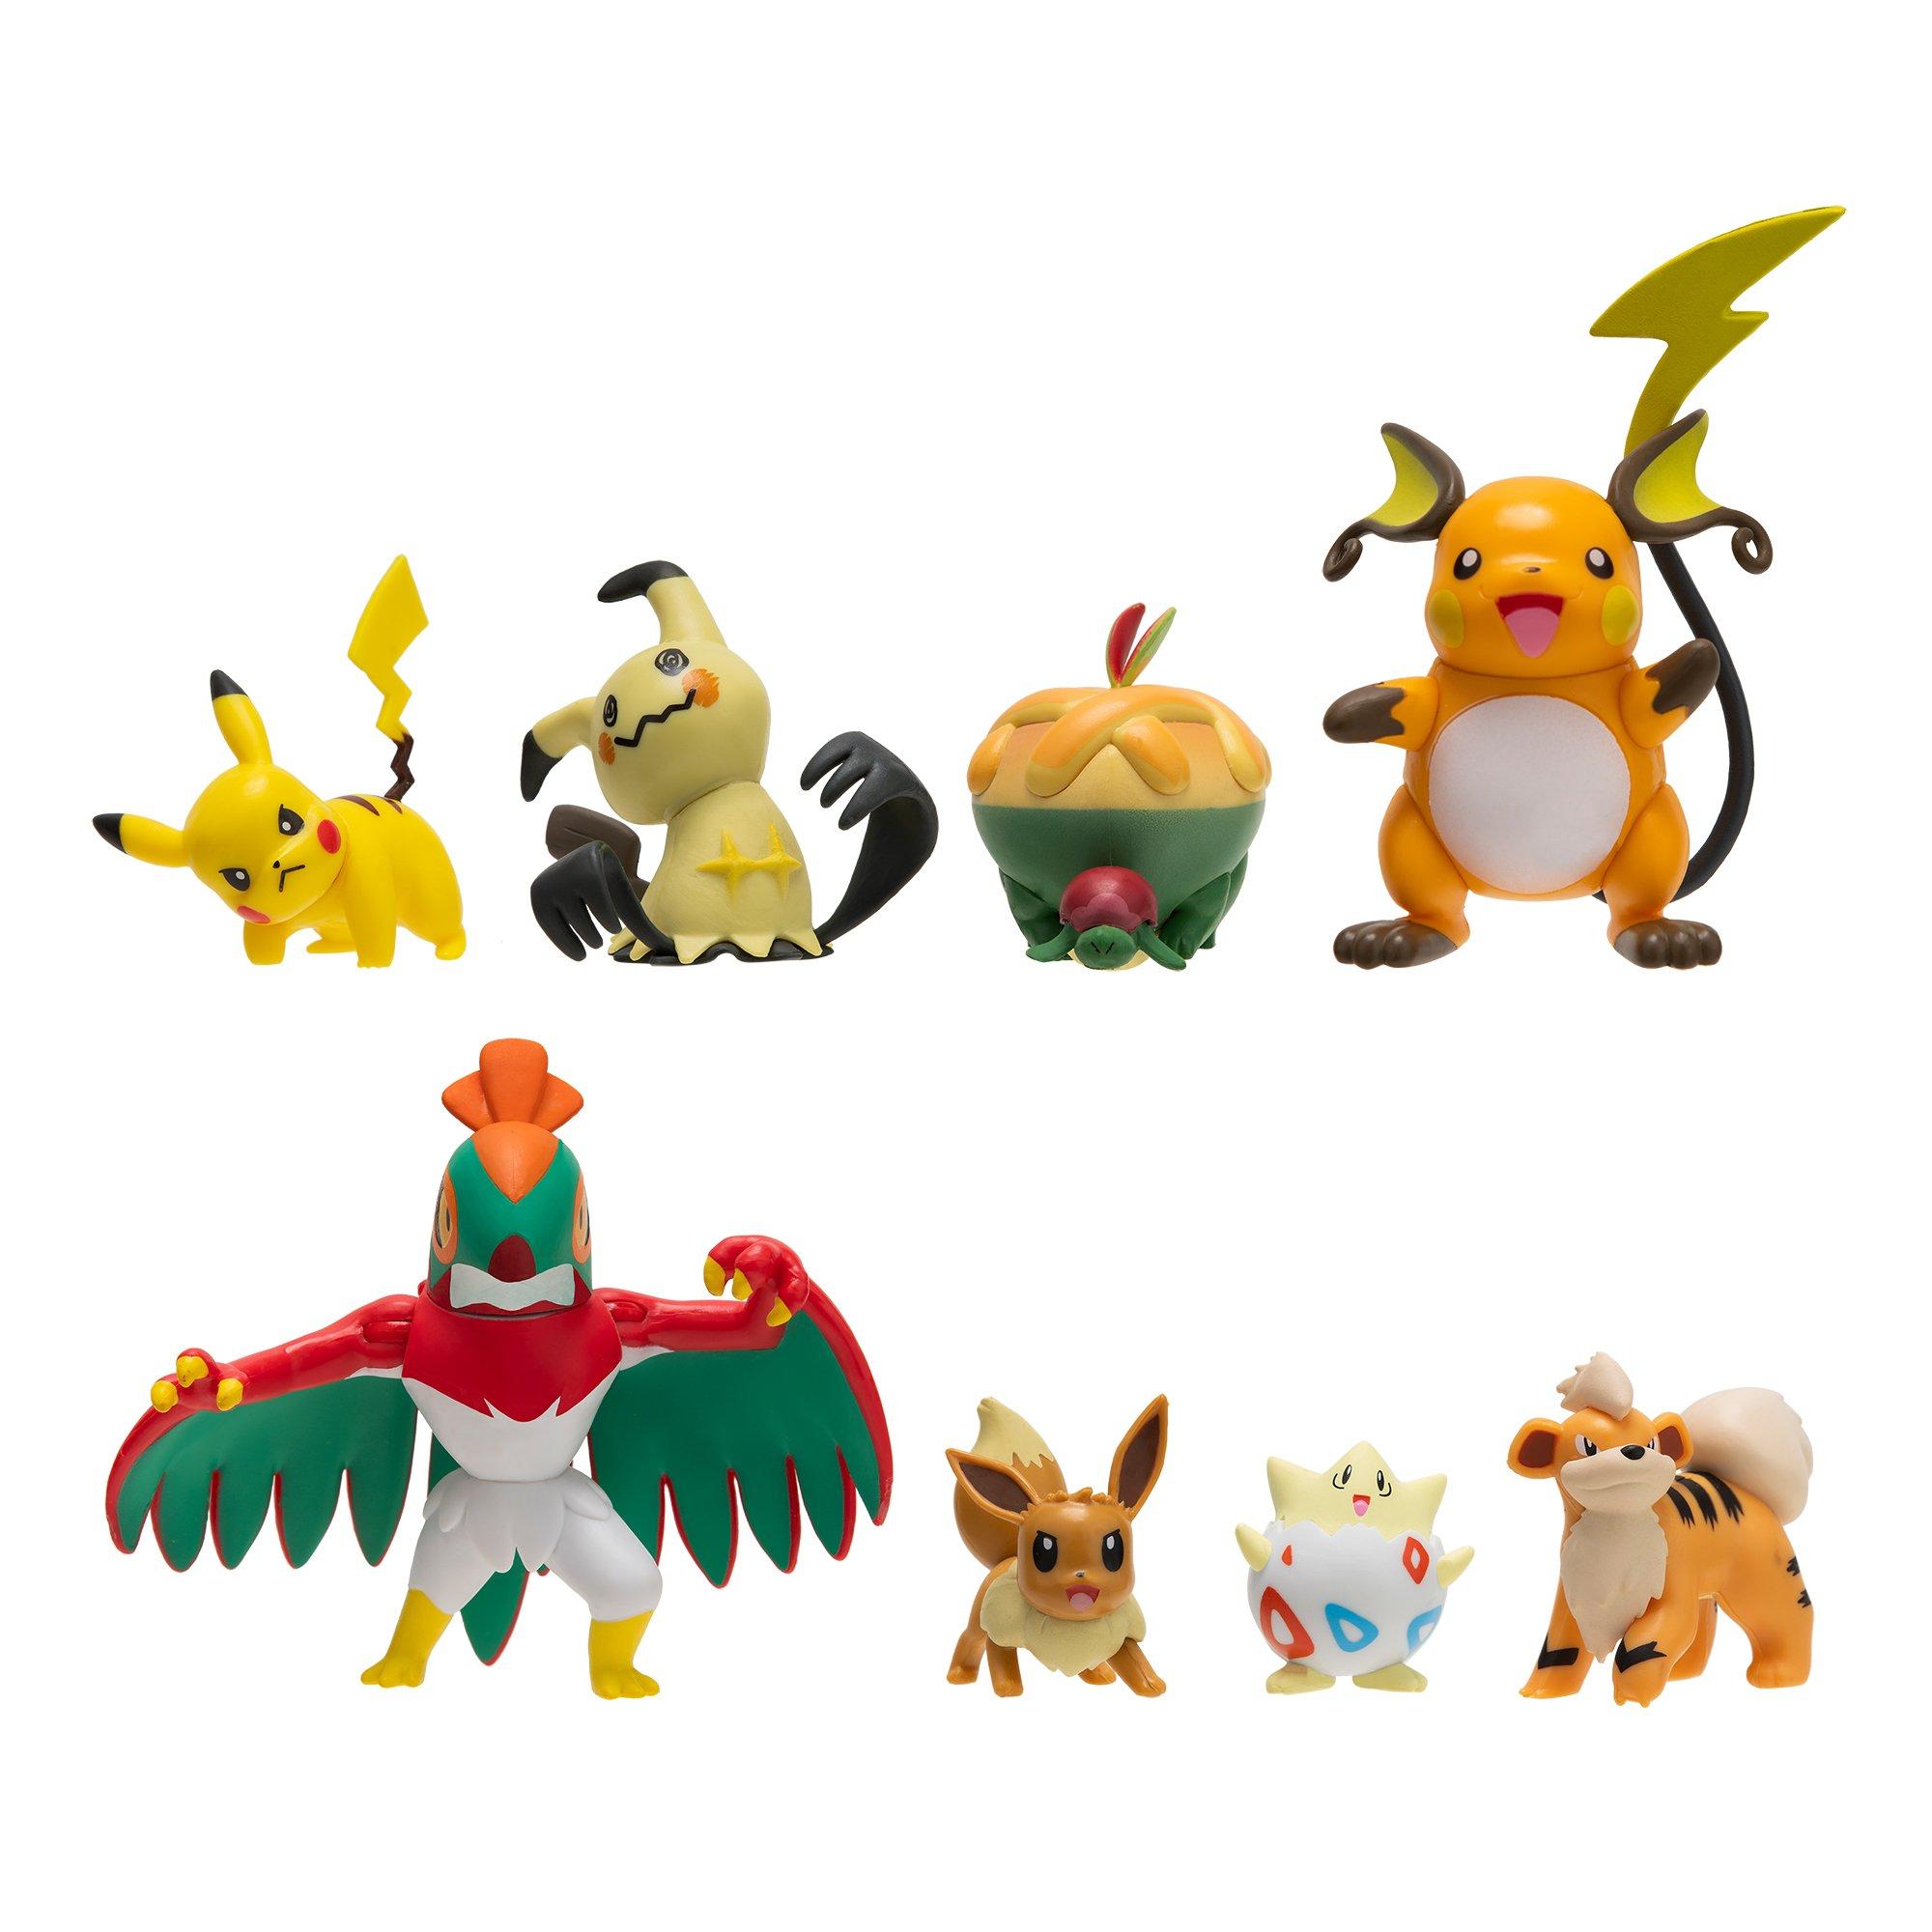 Pokémon Toy Figurine - 8-Pack - Battle Figure - Pikachu/Lucari